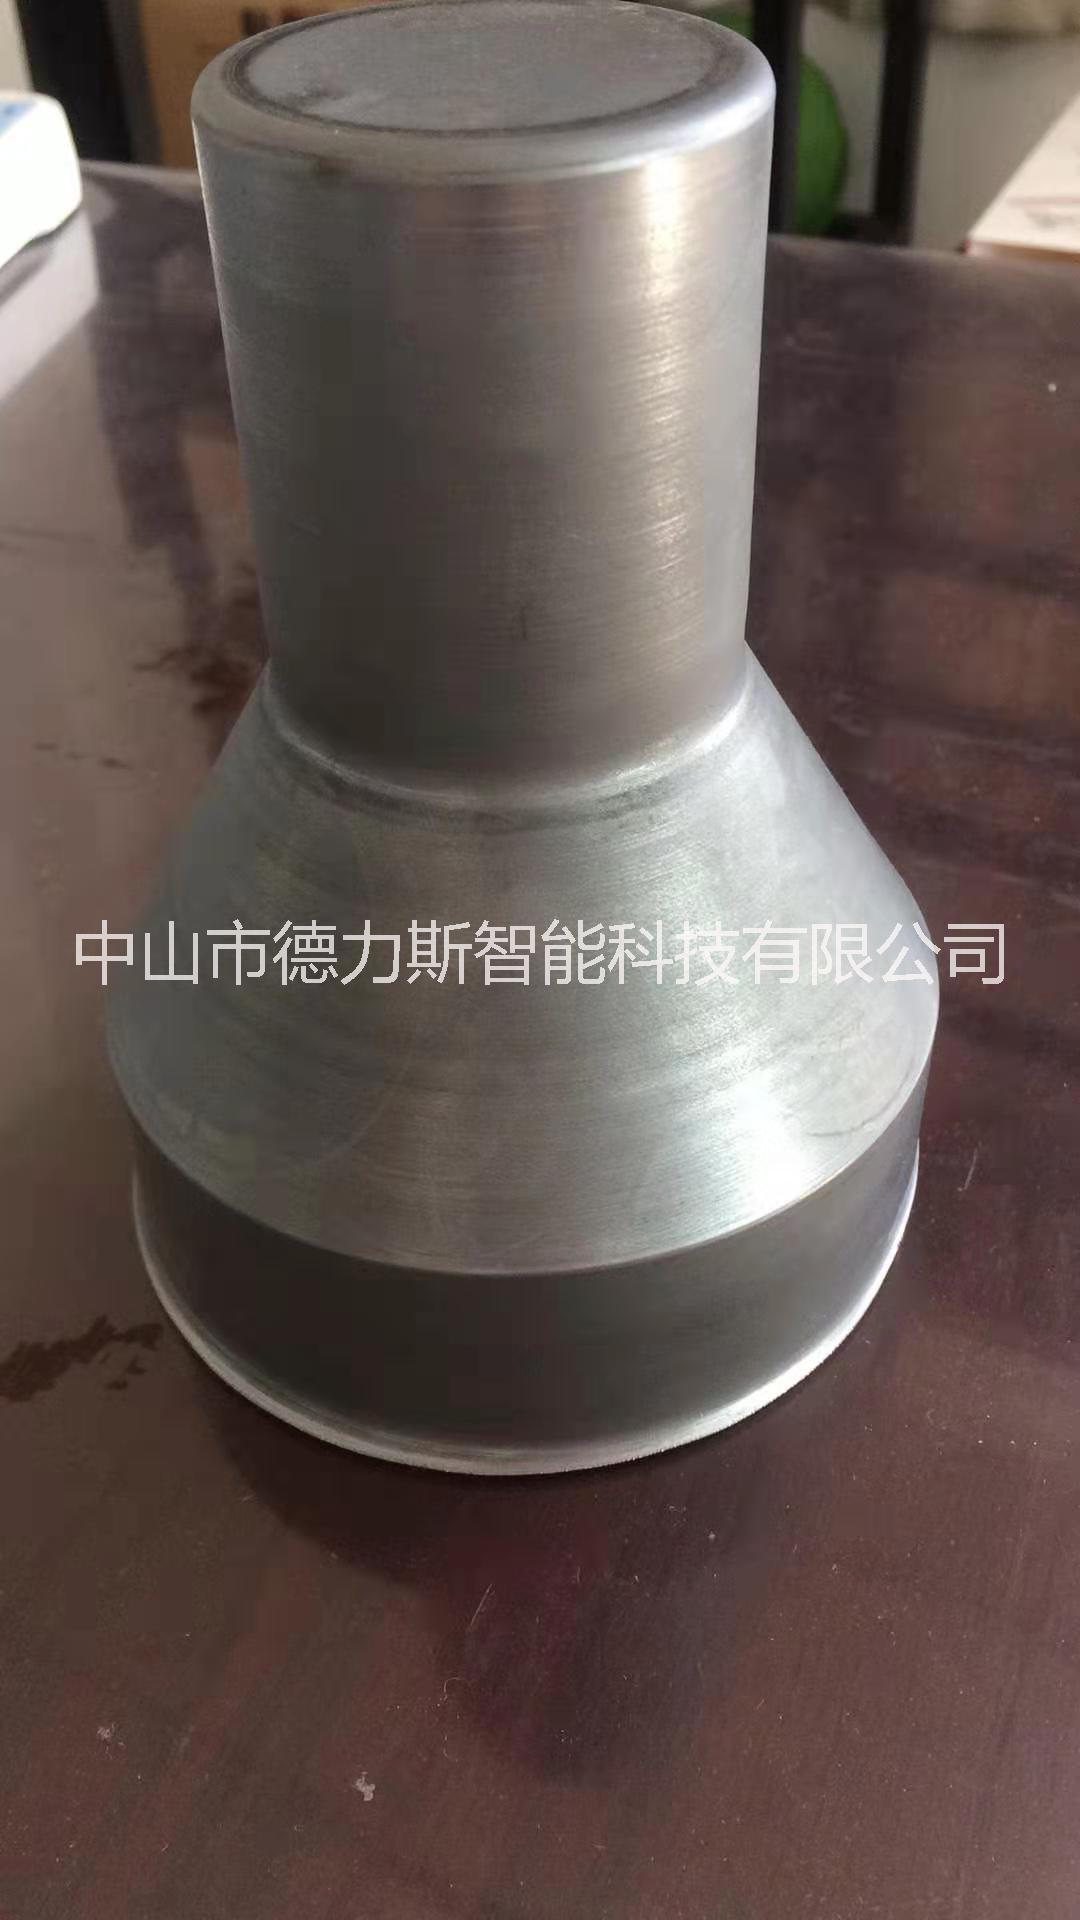 铝铁不锈钢材质喇叭型旋压机铝铁不锈钢材质喇叭型旋压机厂家生产哪家好